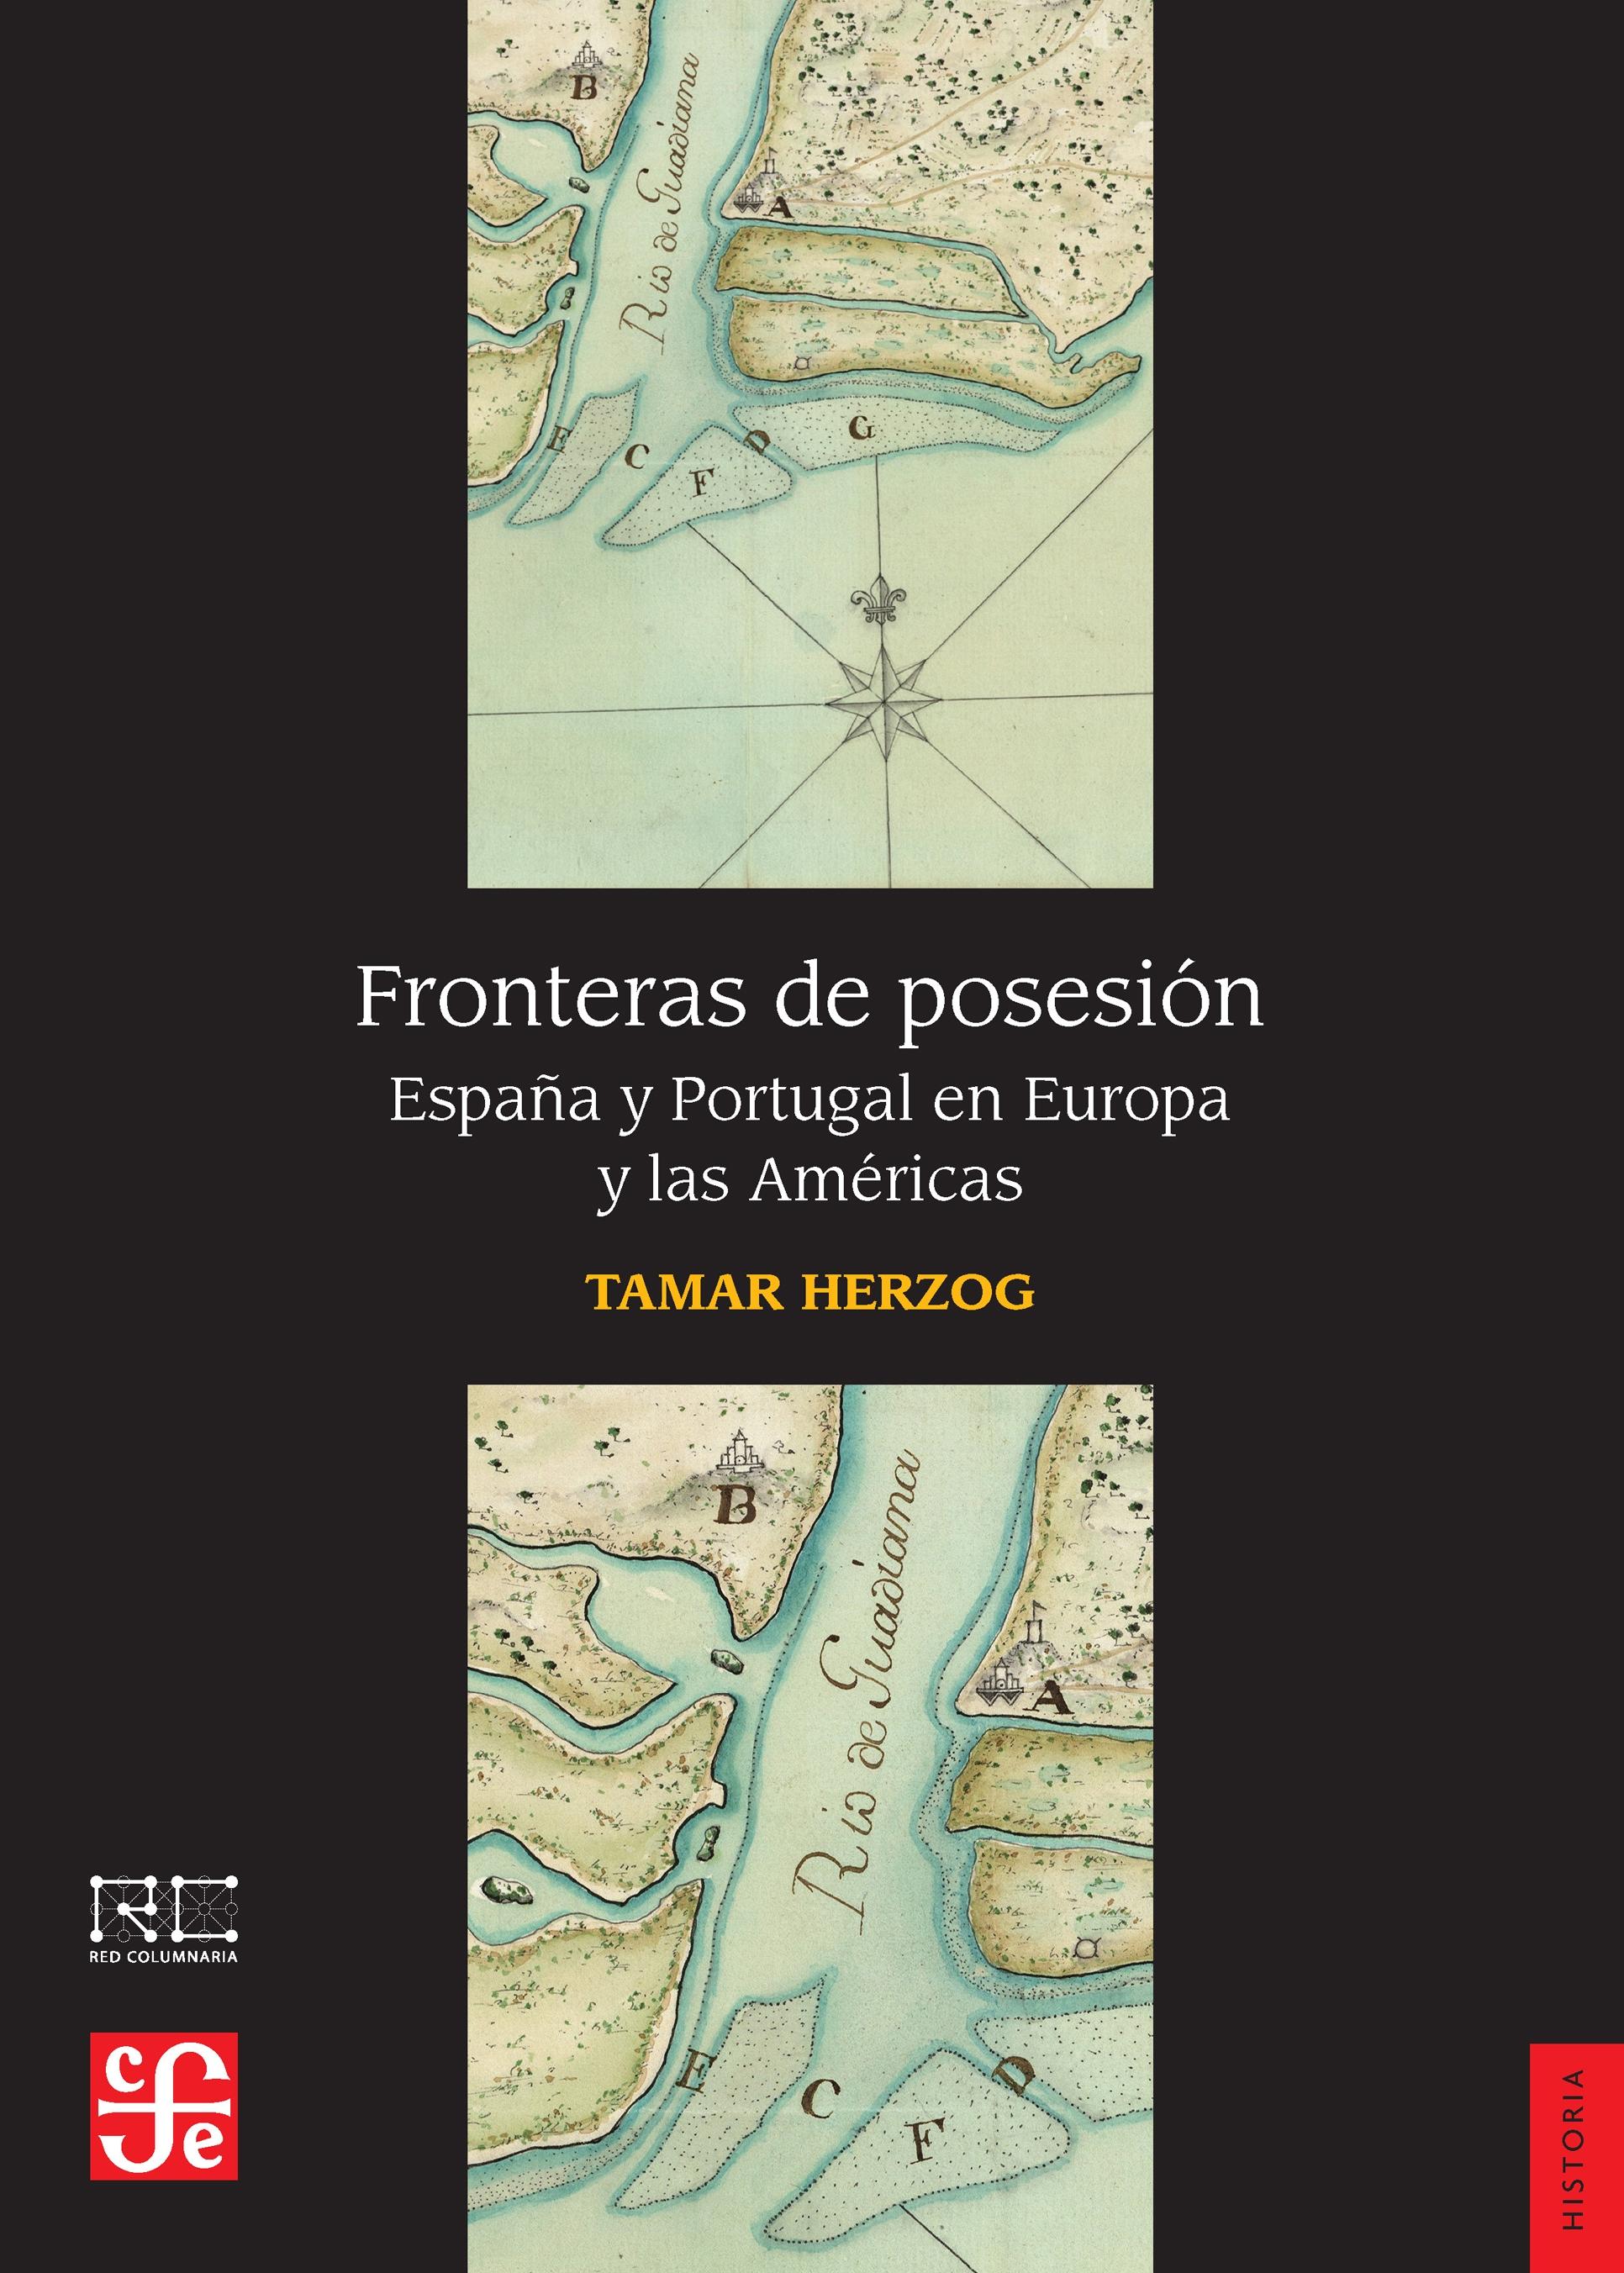 Fronteras de posesión "España y Portugal en Europa y las Américas"